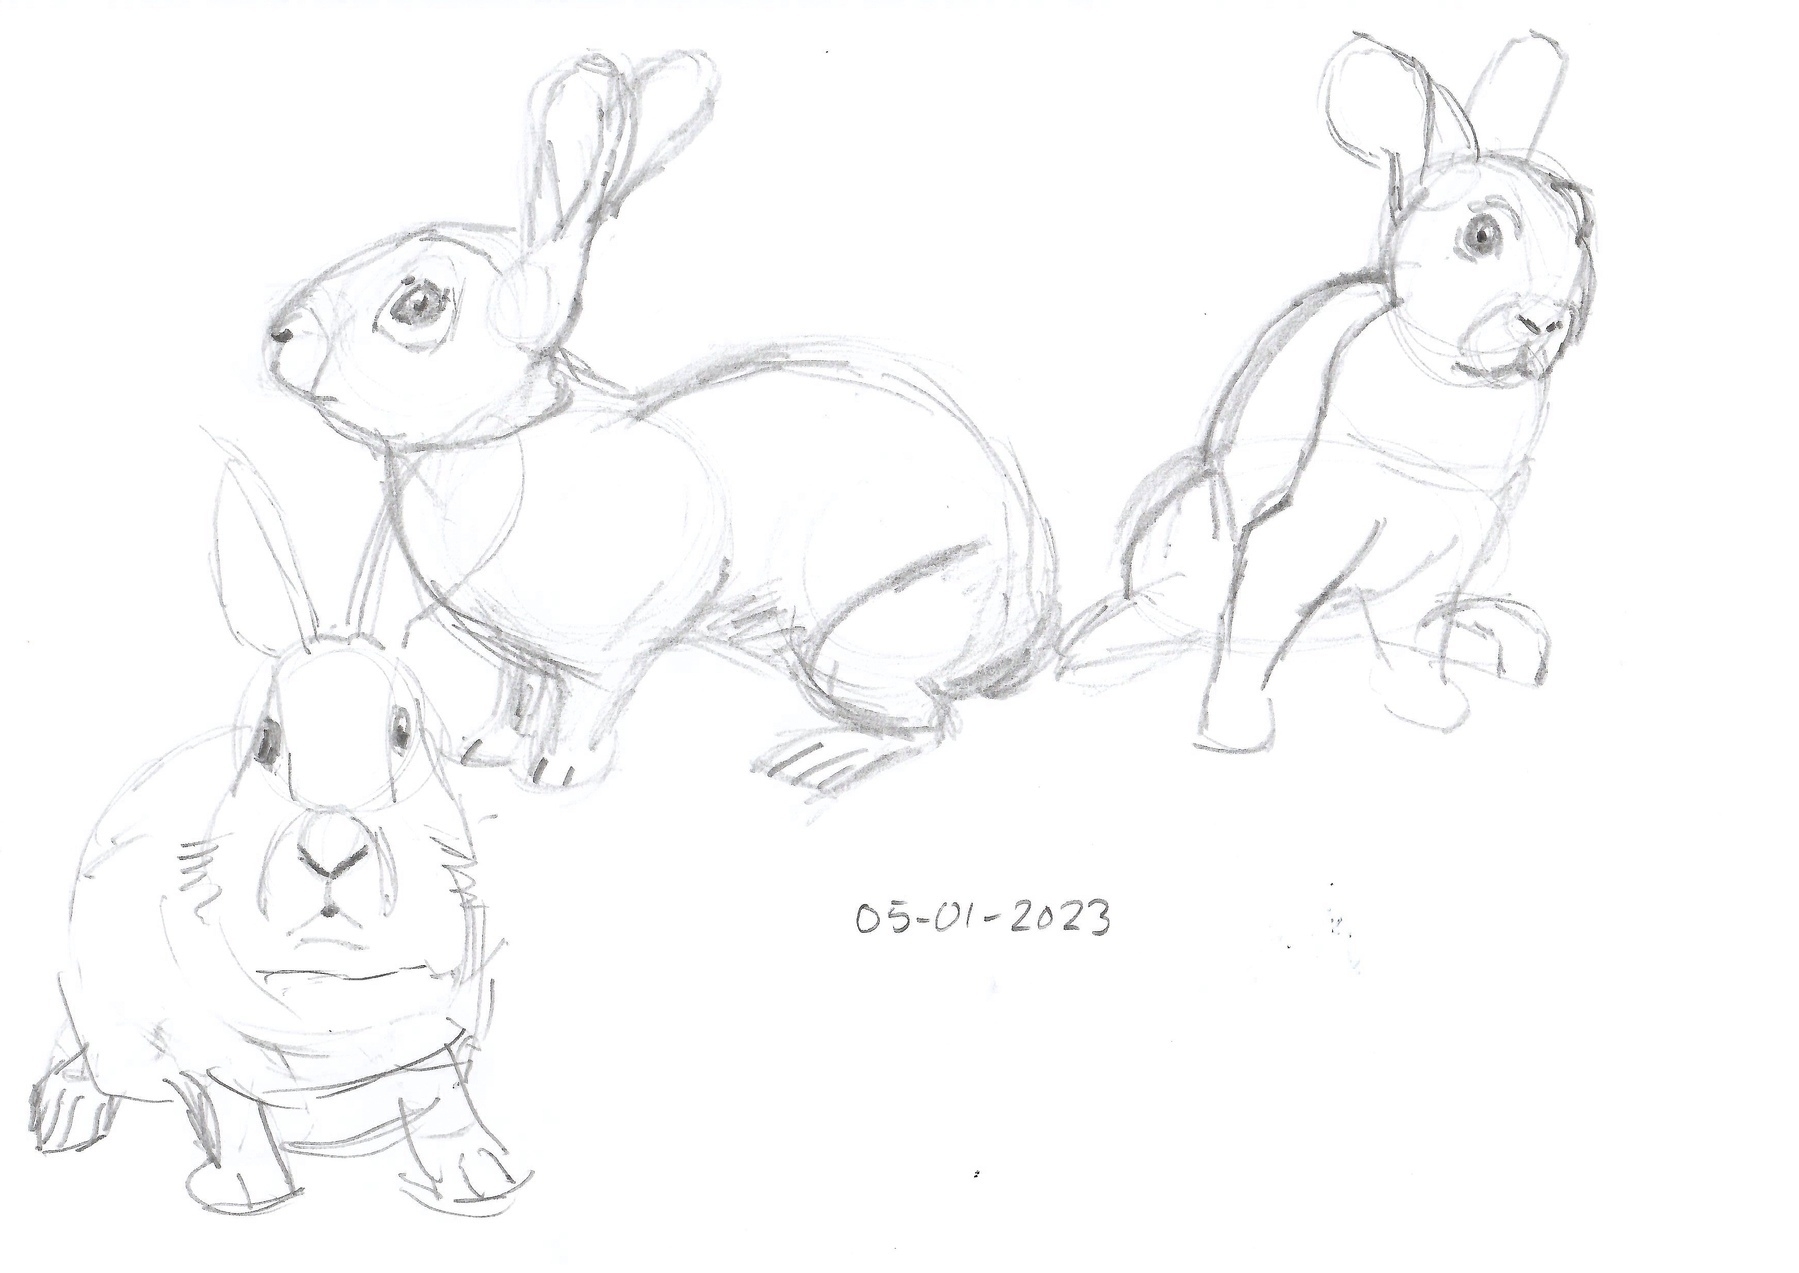 pencil sketches of rabbits